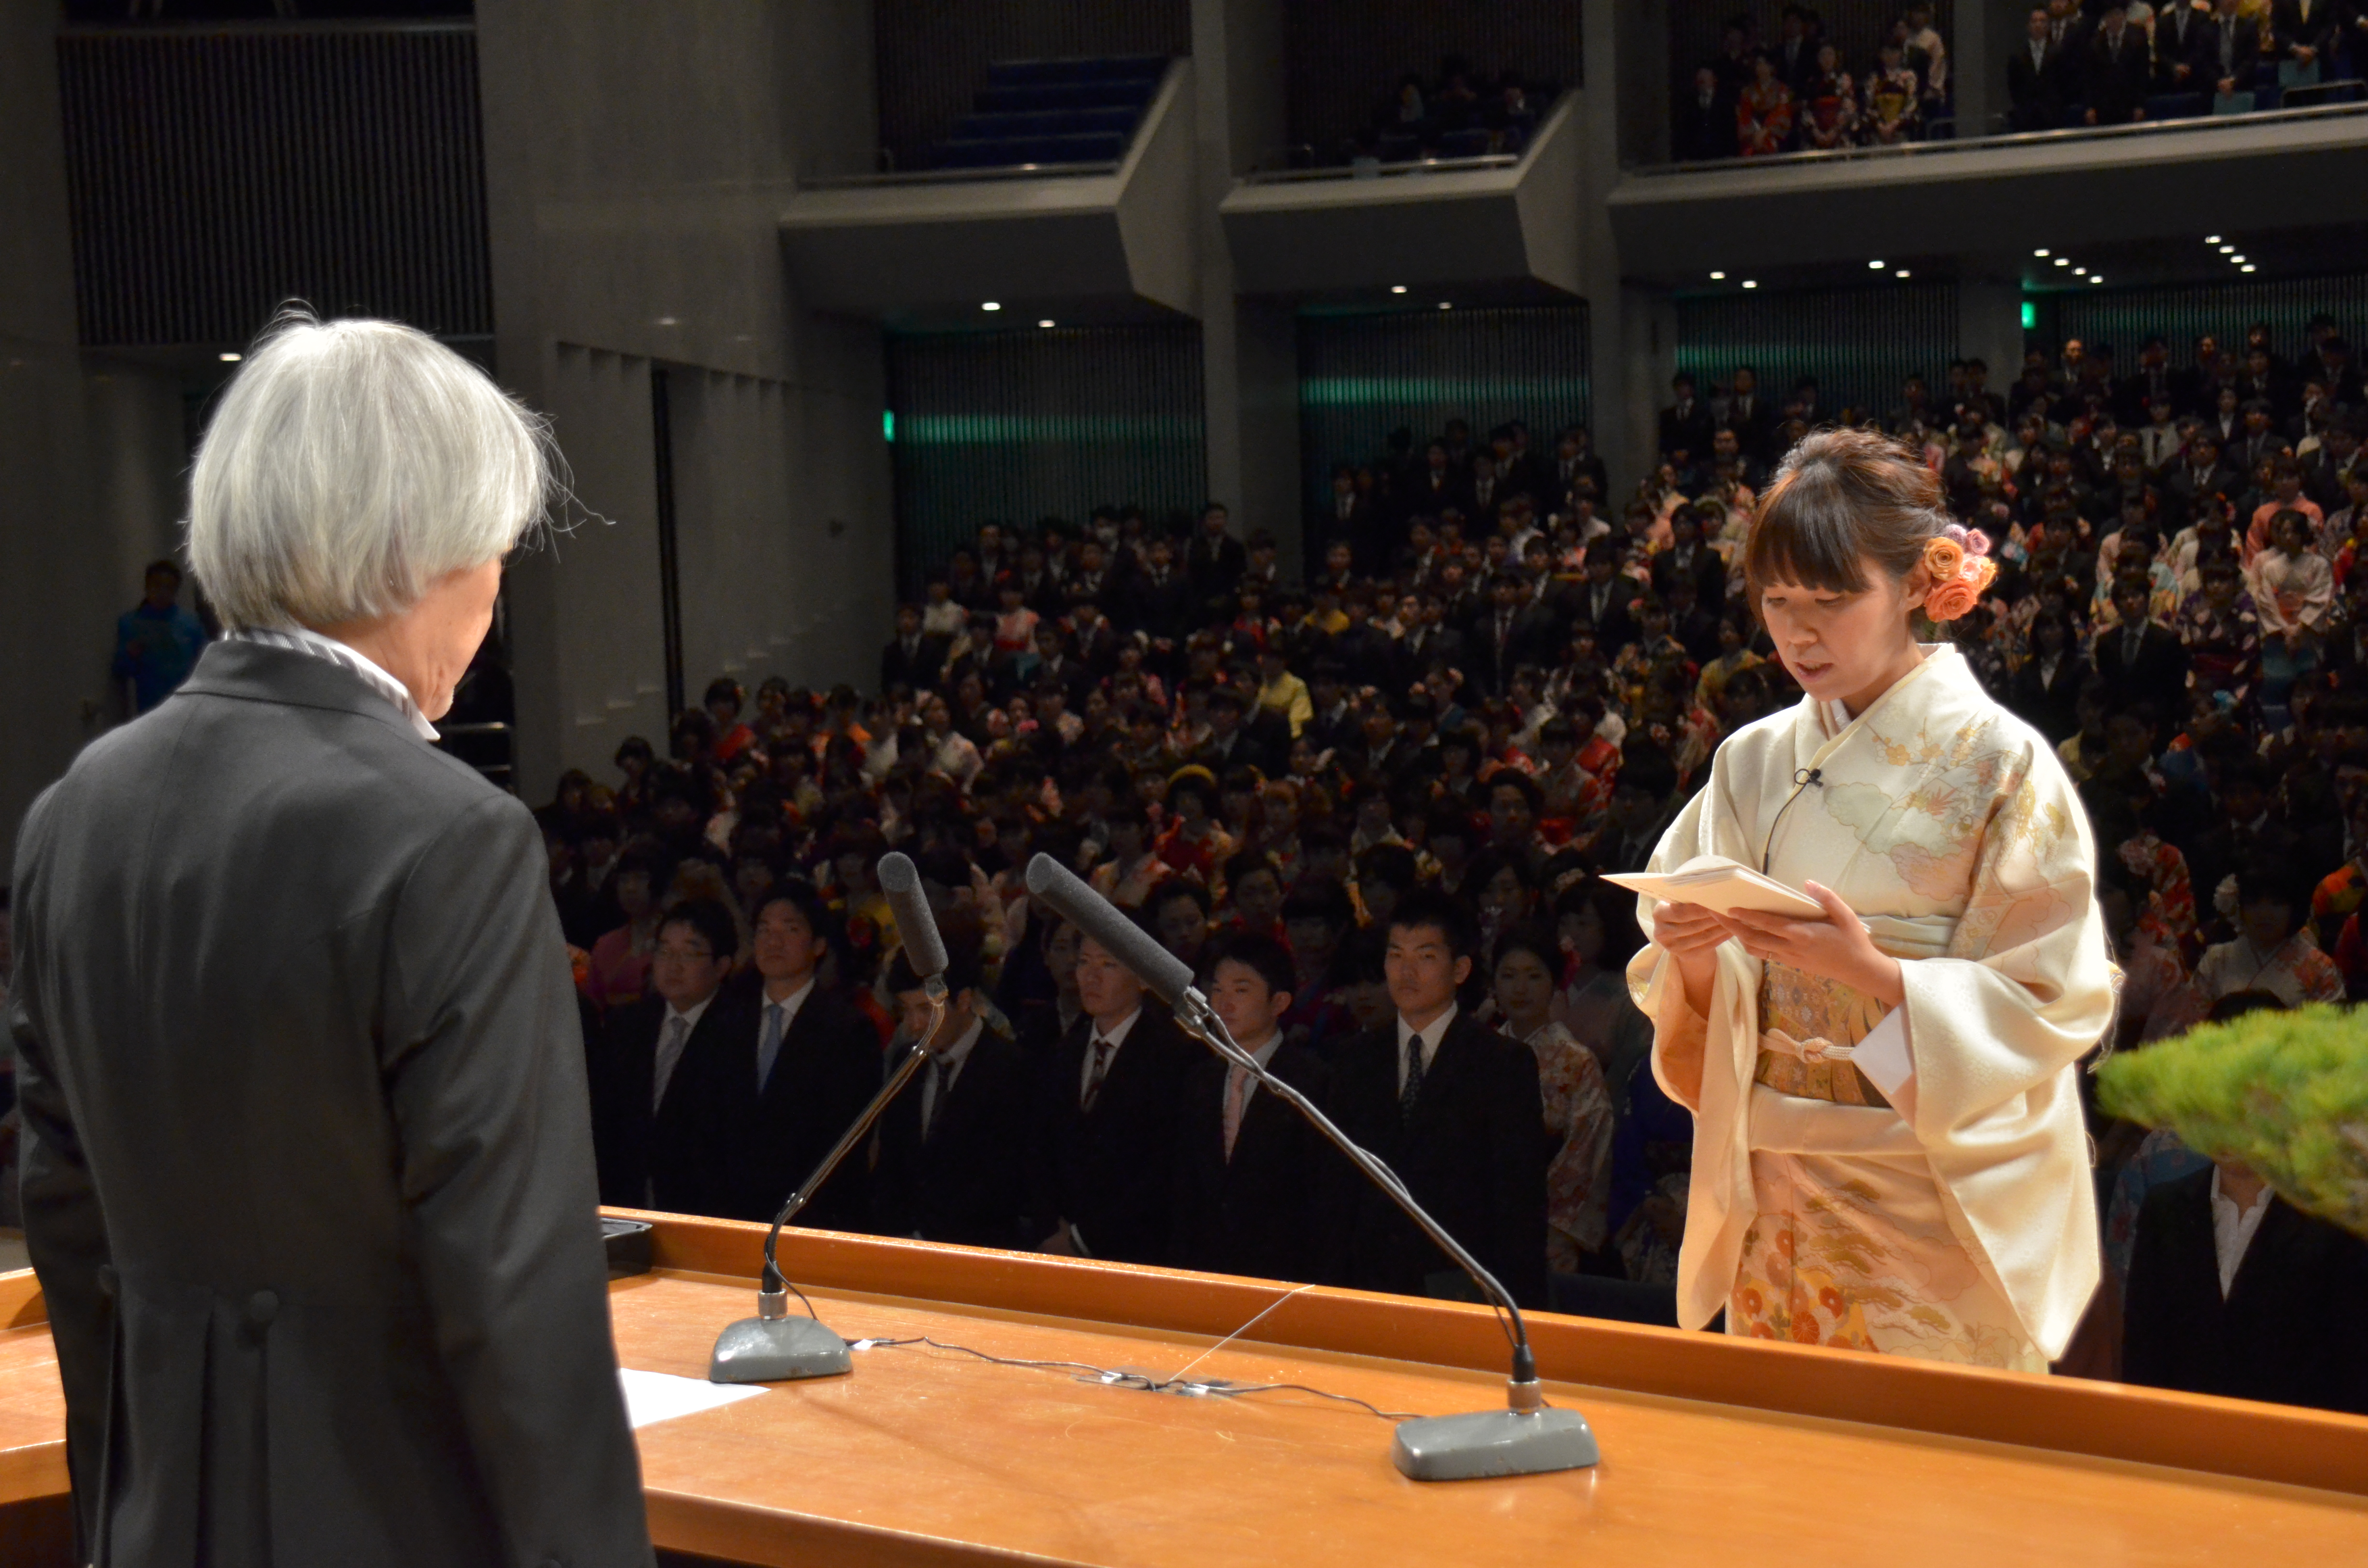 愛媛大学卒業式及び愛媛大学大学院学位記授与式が挙行されました 3月24日 木 愛媛大学医学部